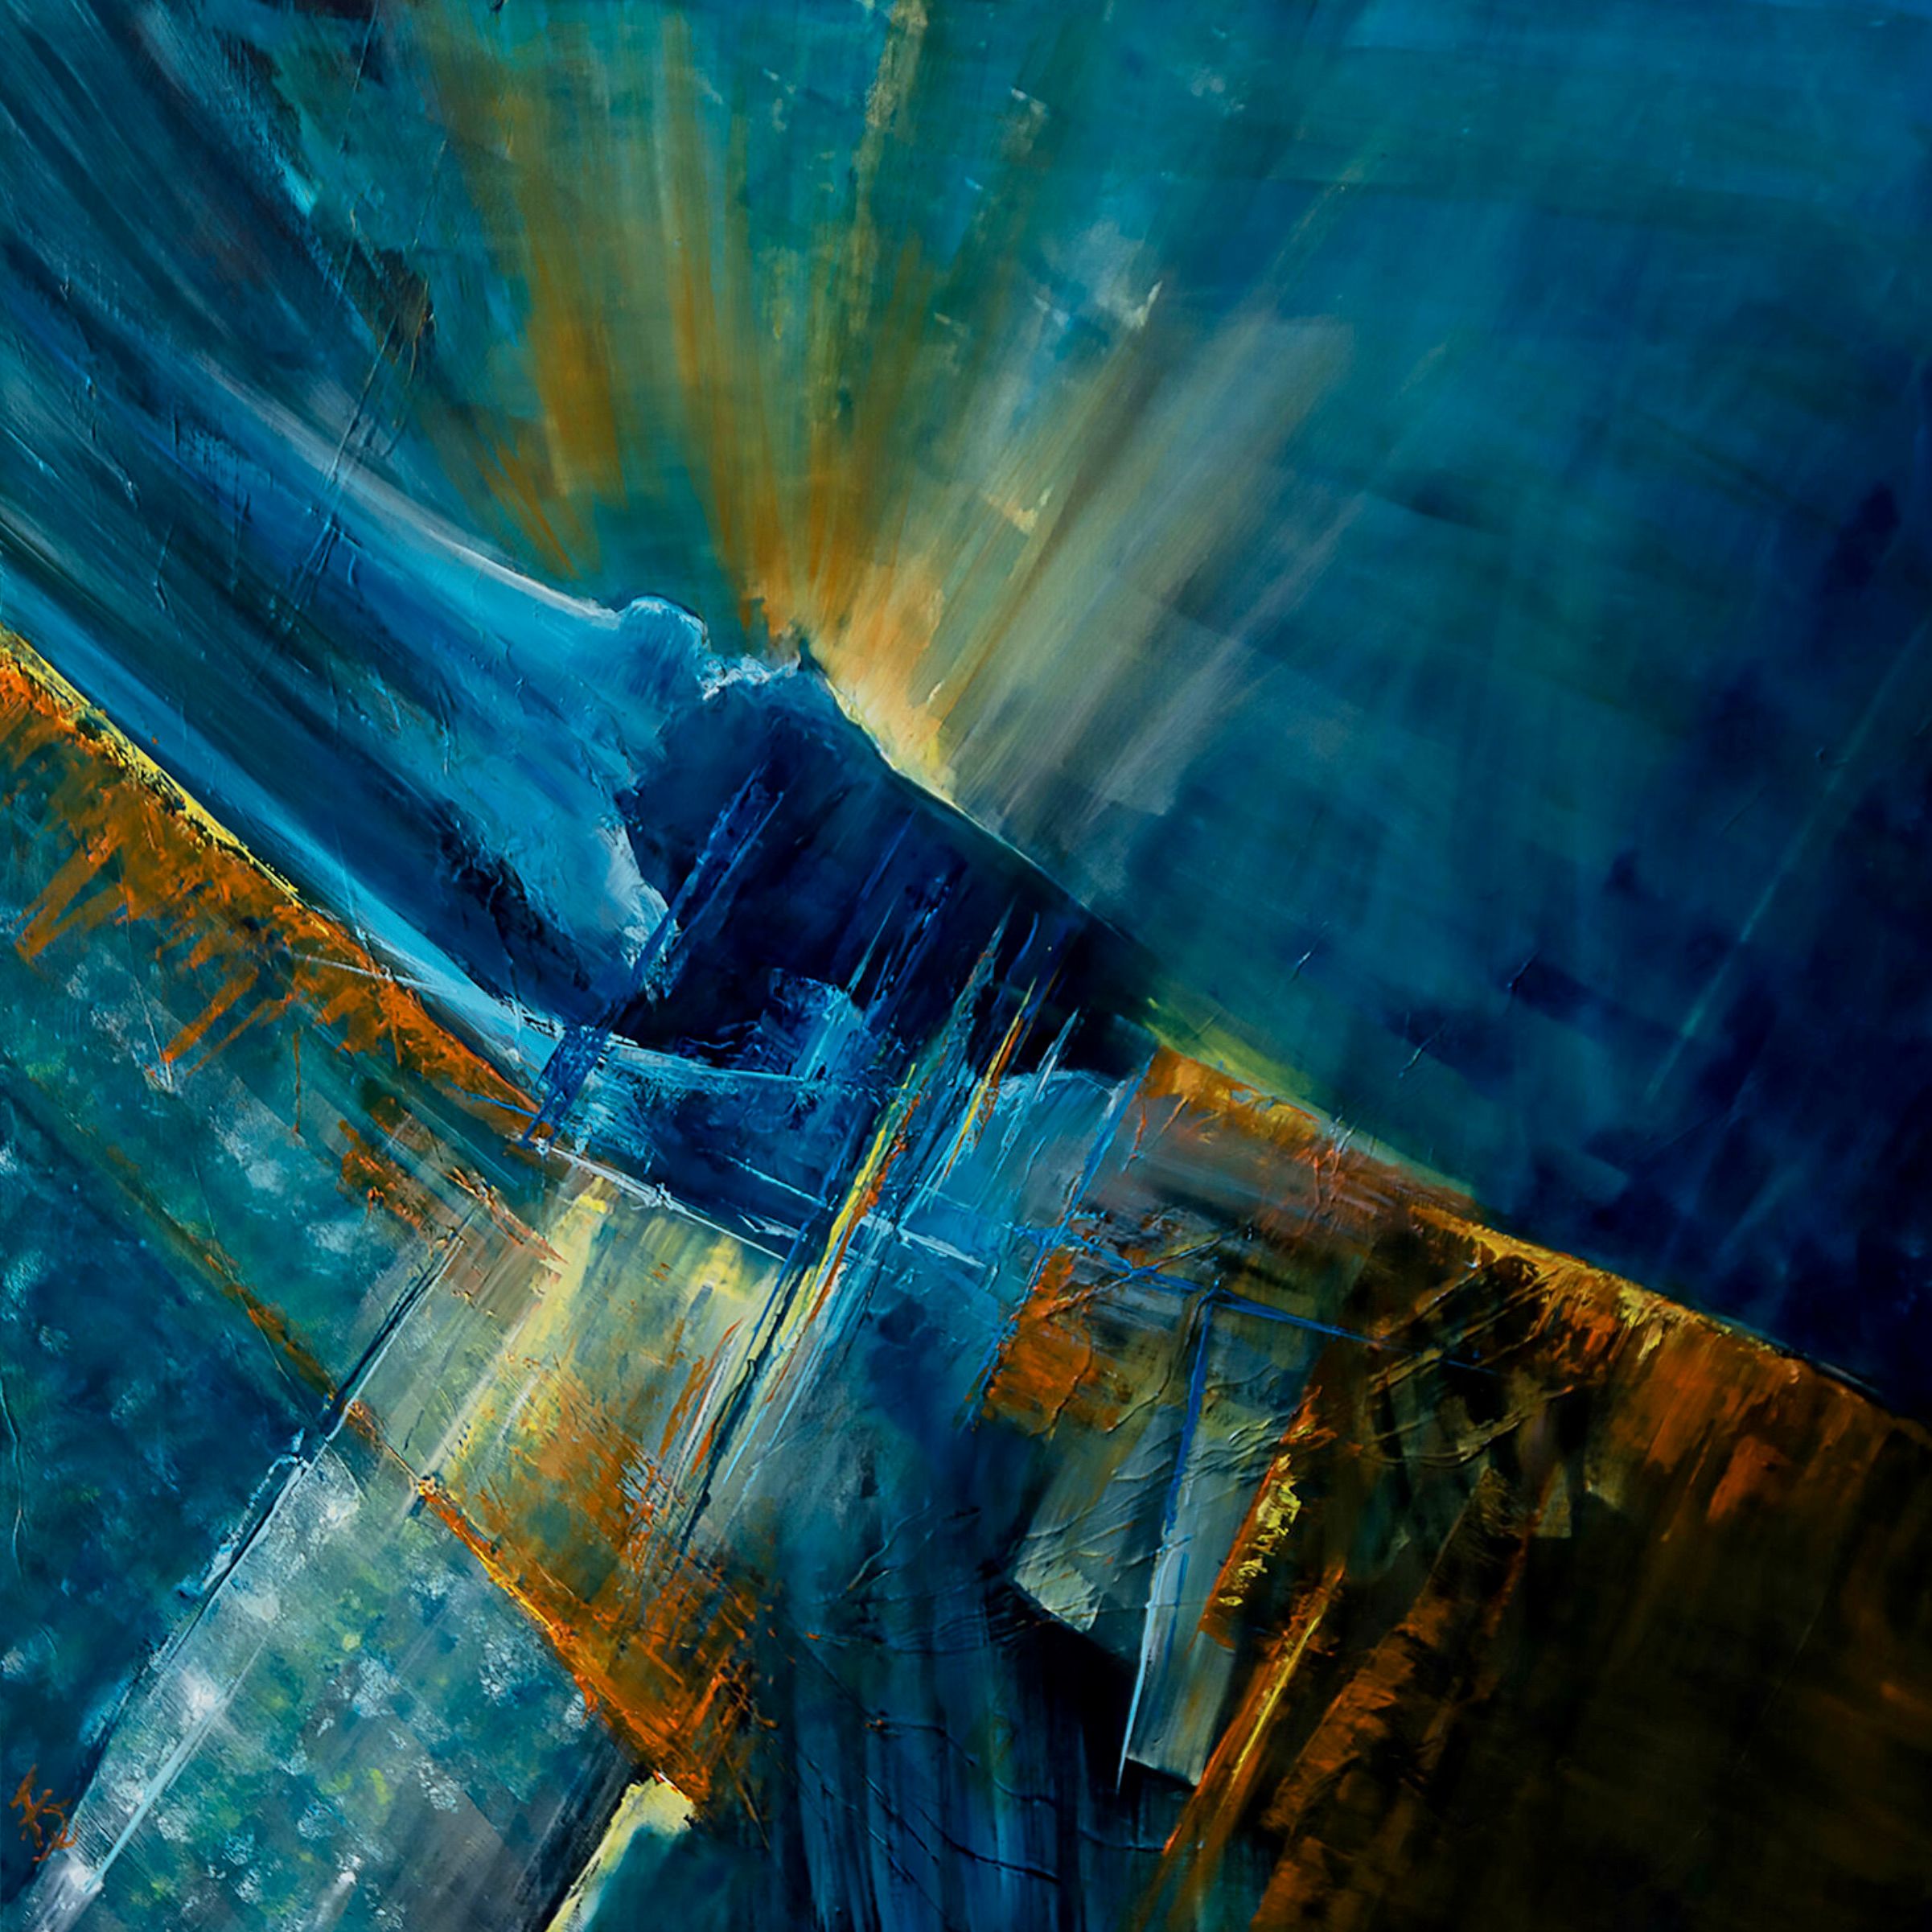 La pintura abstracta "última aparición" de Françoise Dugourd-Caput muestra la abstracción o la atmósfera de una visión espacial ... Inspiración muy onírica del espacio. Podemos ver la aparición de una especie de paisaje extraño donde la luz emerge de las profundidades del universo.